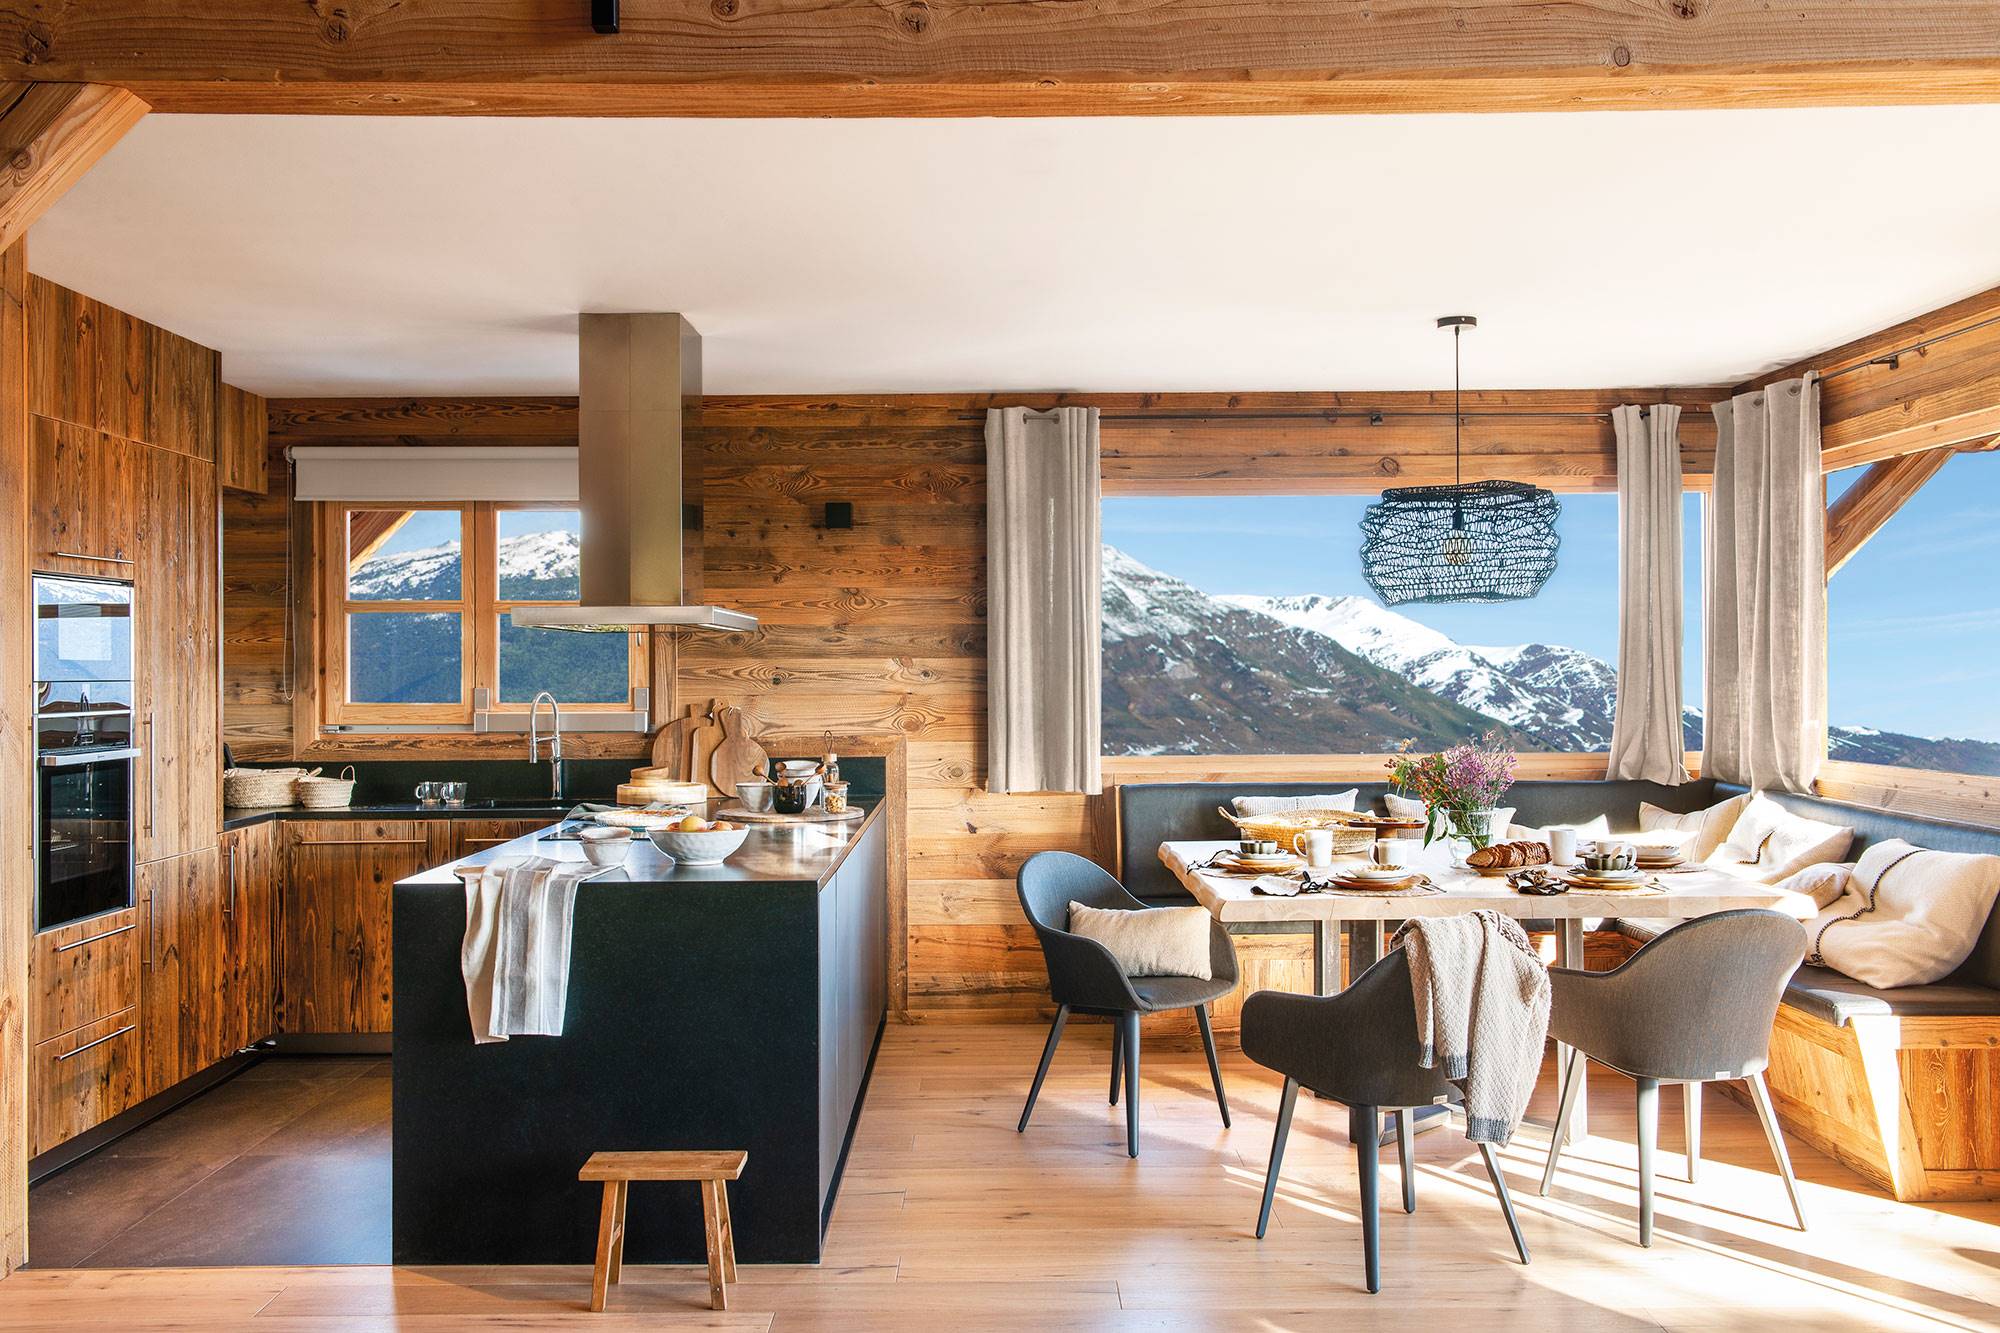 Cocina comedor de cabaña de madera con vistas a las montañas nevadas.